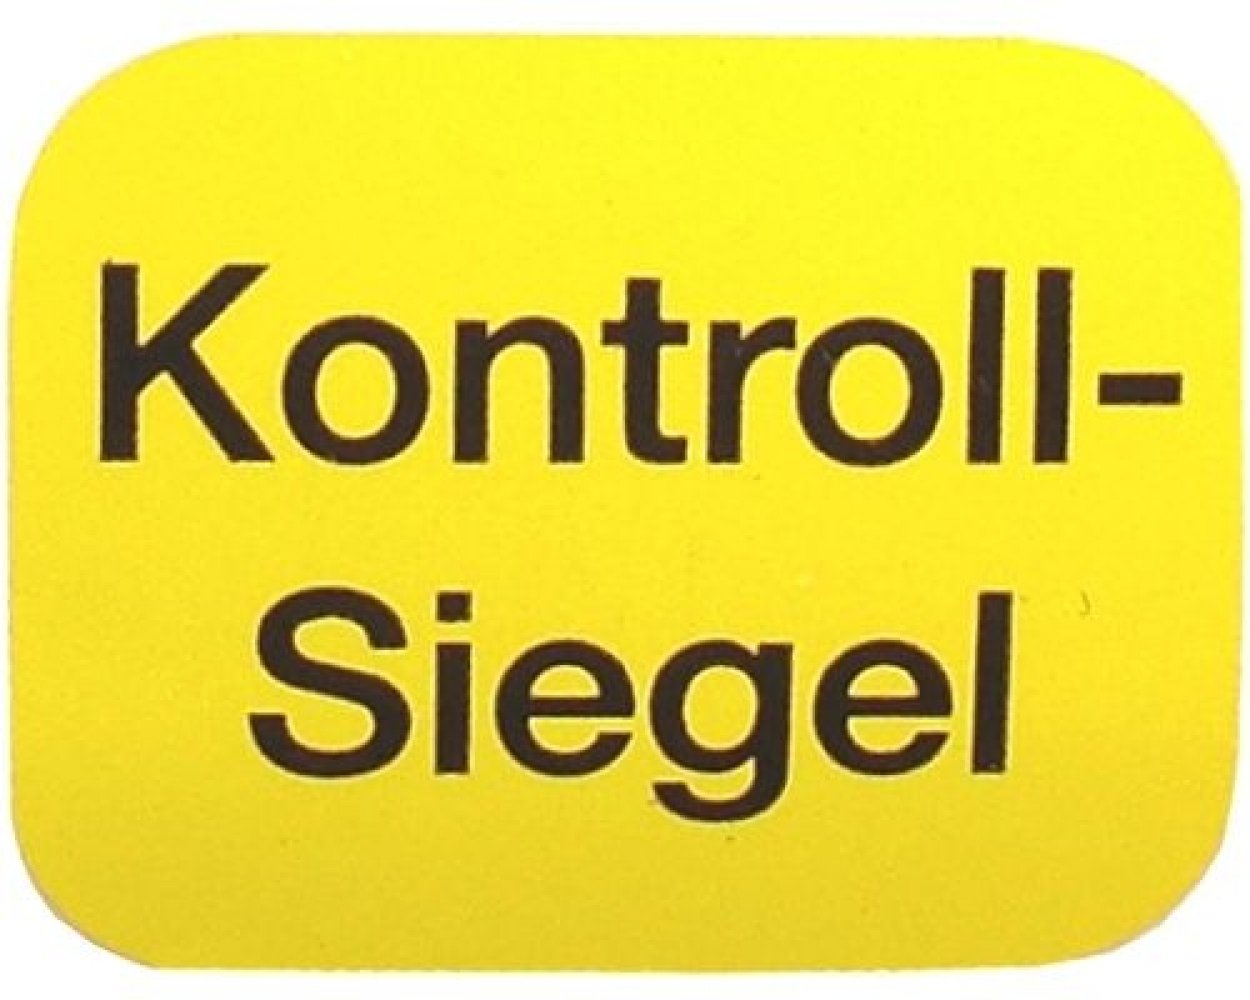 Kontrollsiegel Sicherheitssiegel Siegel gelb 50 Stück Aufkleber 2,2x1,8 cm